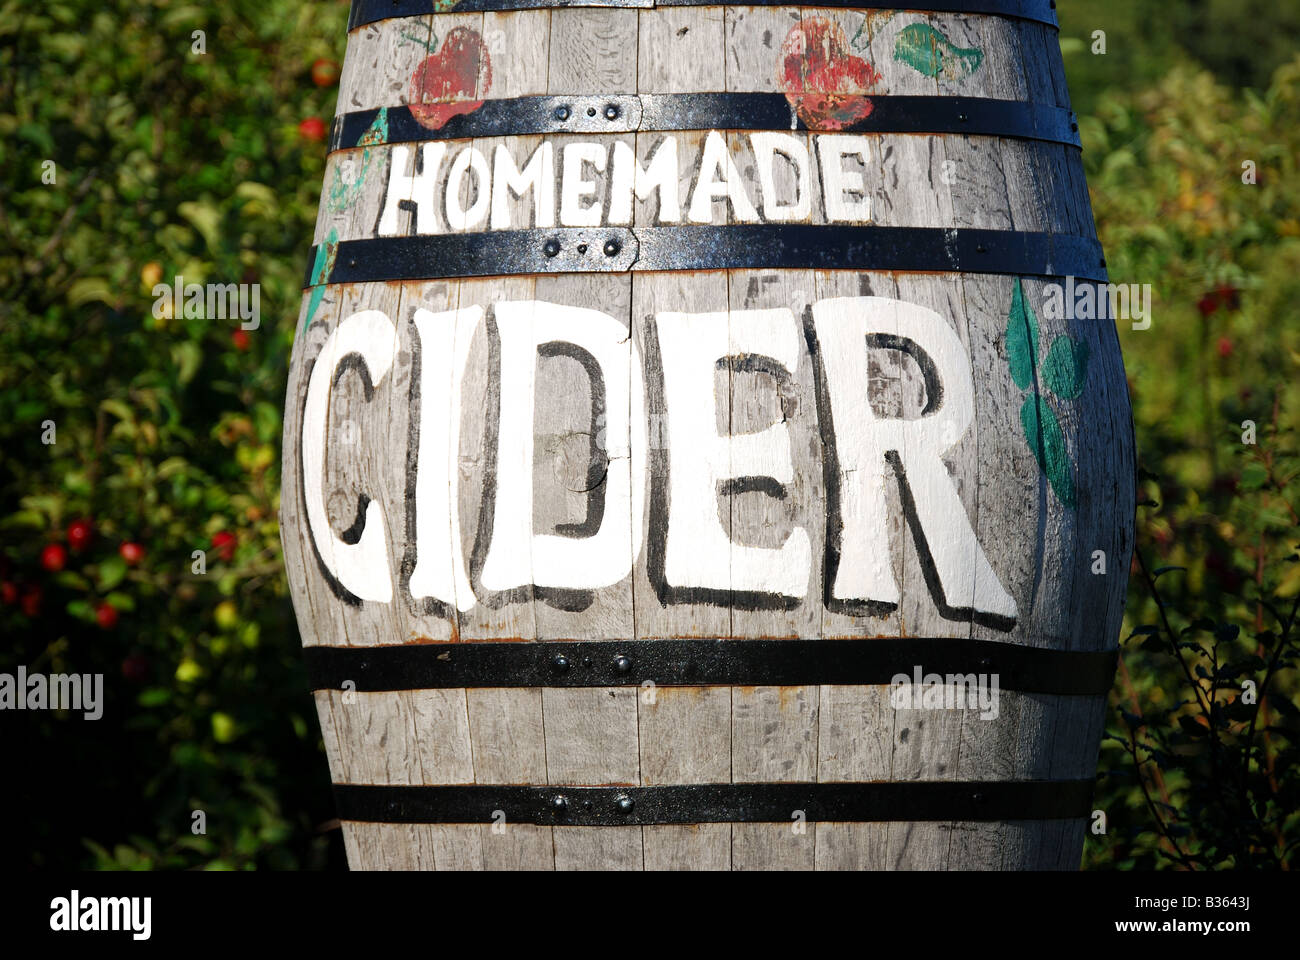 Cider barrel, Badger's Hill Cider farm, Nr.Chilham, Kent, England, United Kingdom Stock Photo